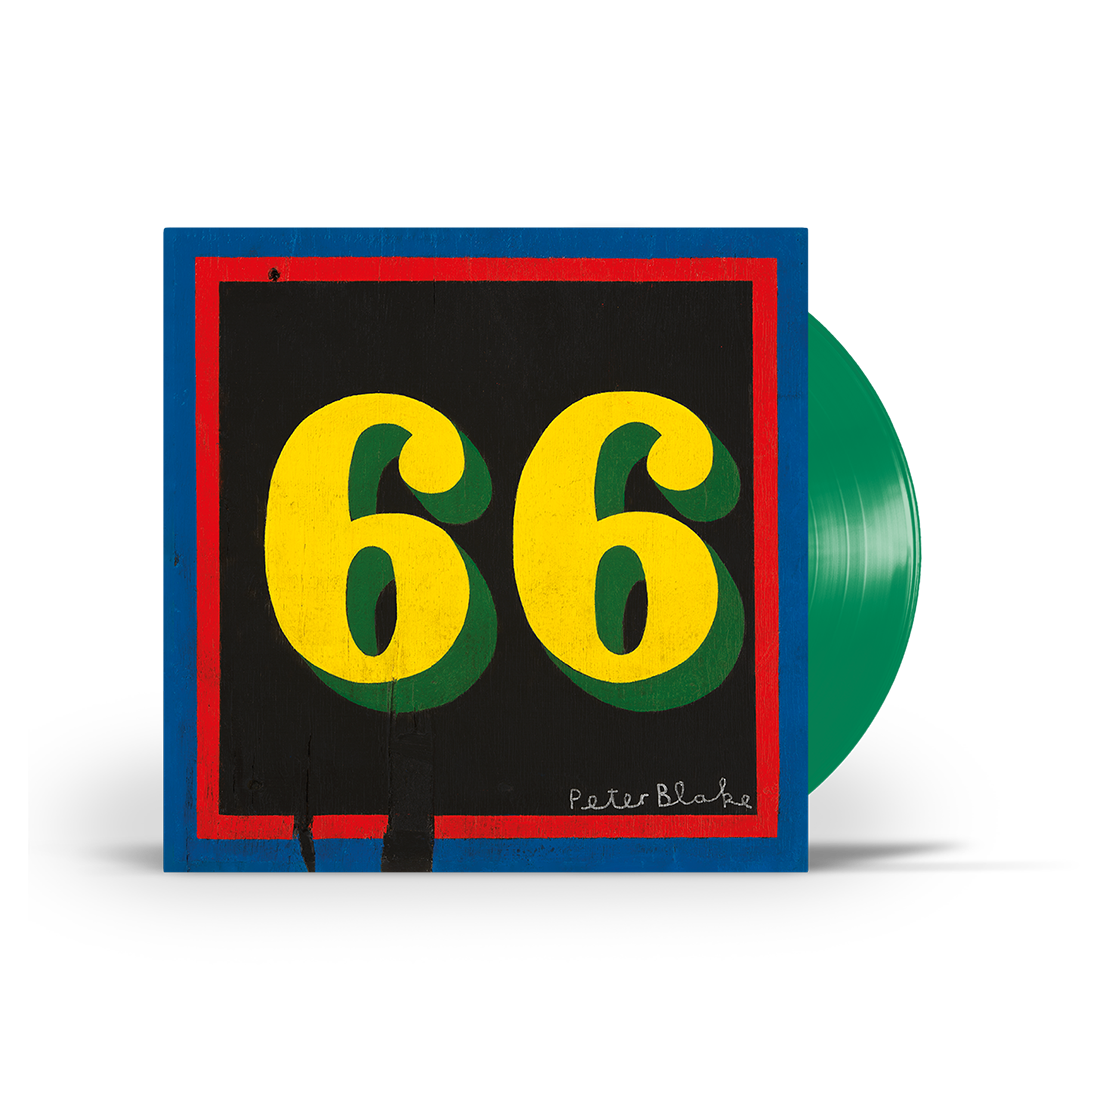 66 Cassette, 66 CD, 66 Deluxe CD (Includes Bonus Tracks), 66 Classic Vinyl + 66 Green Vinyl